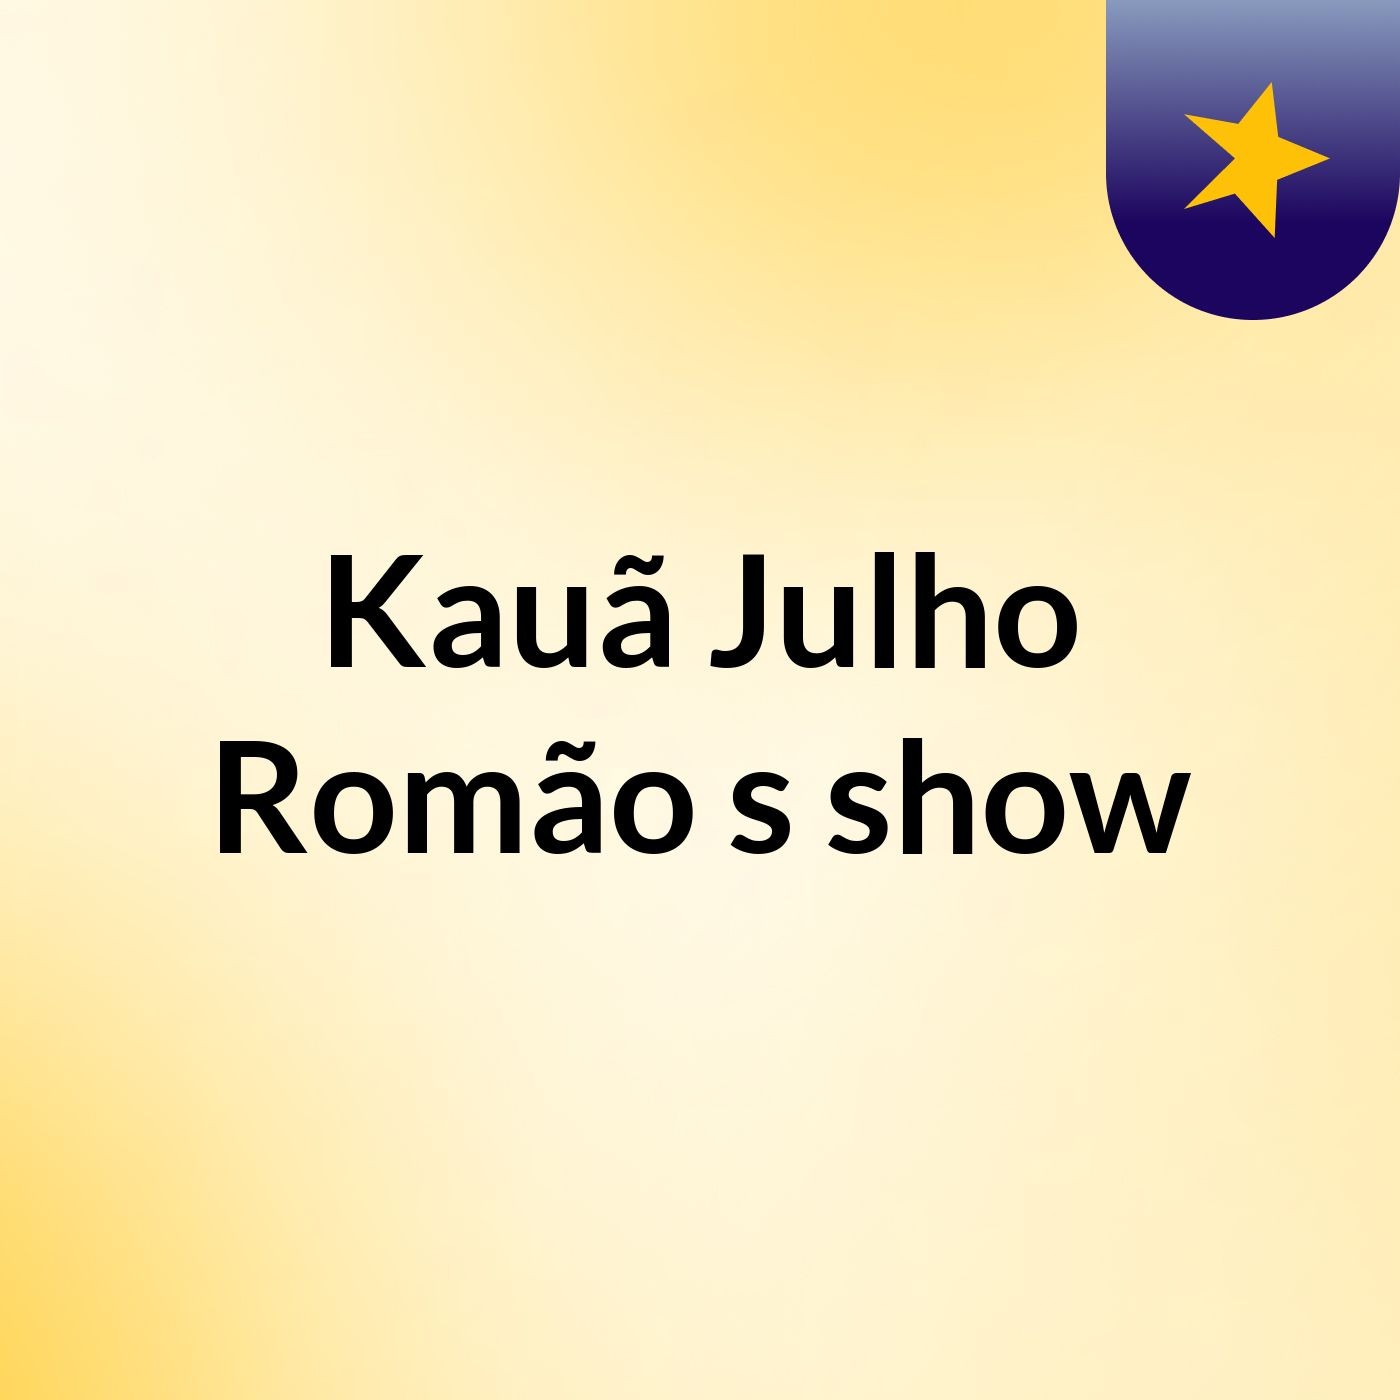 Episódio 3 - Kauã Julho Romão's show